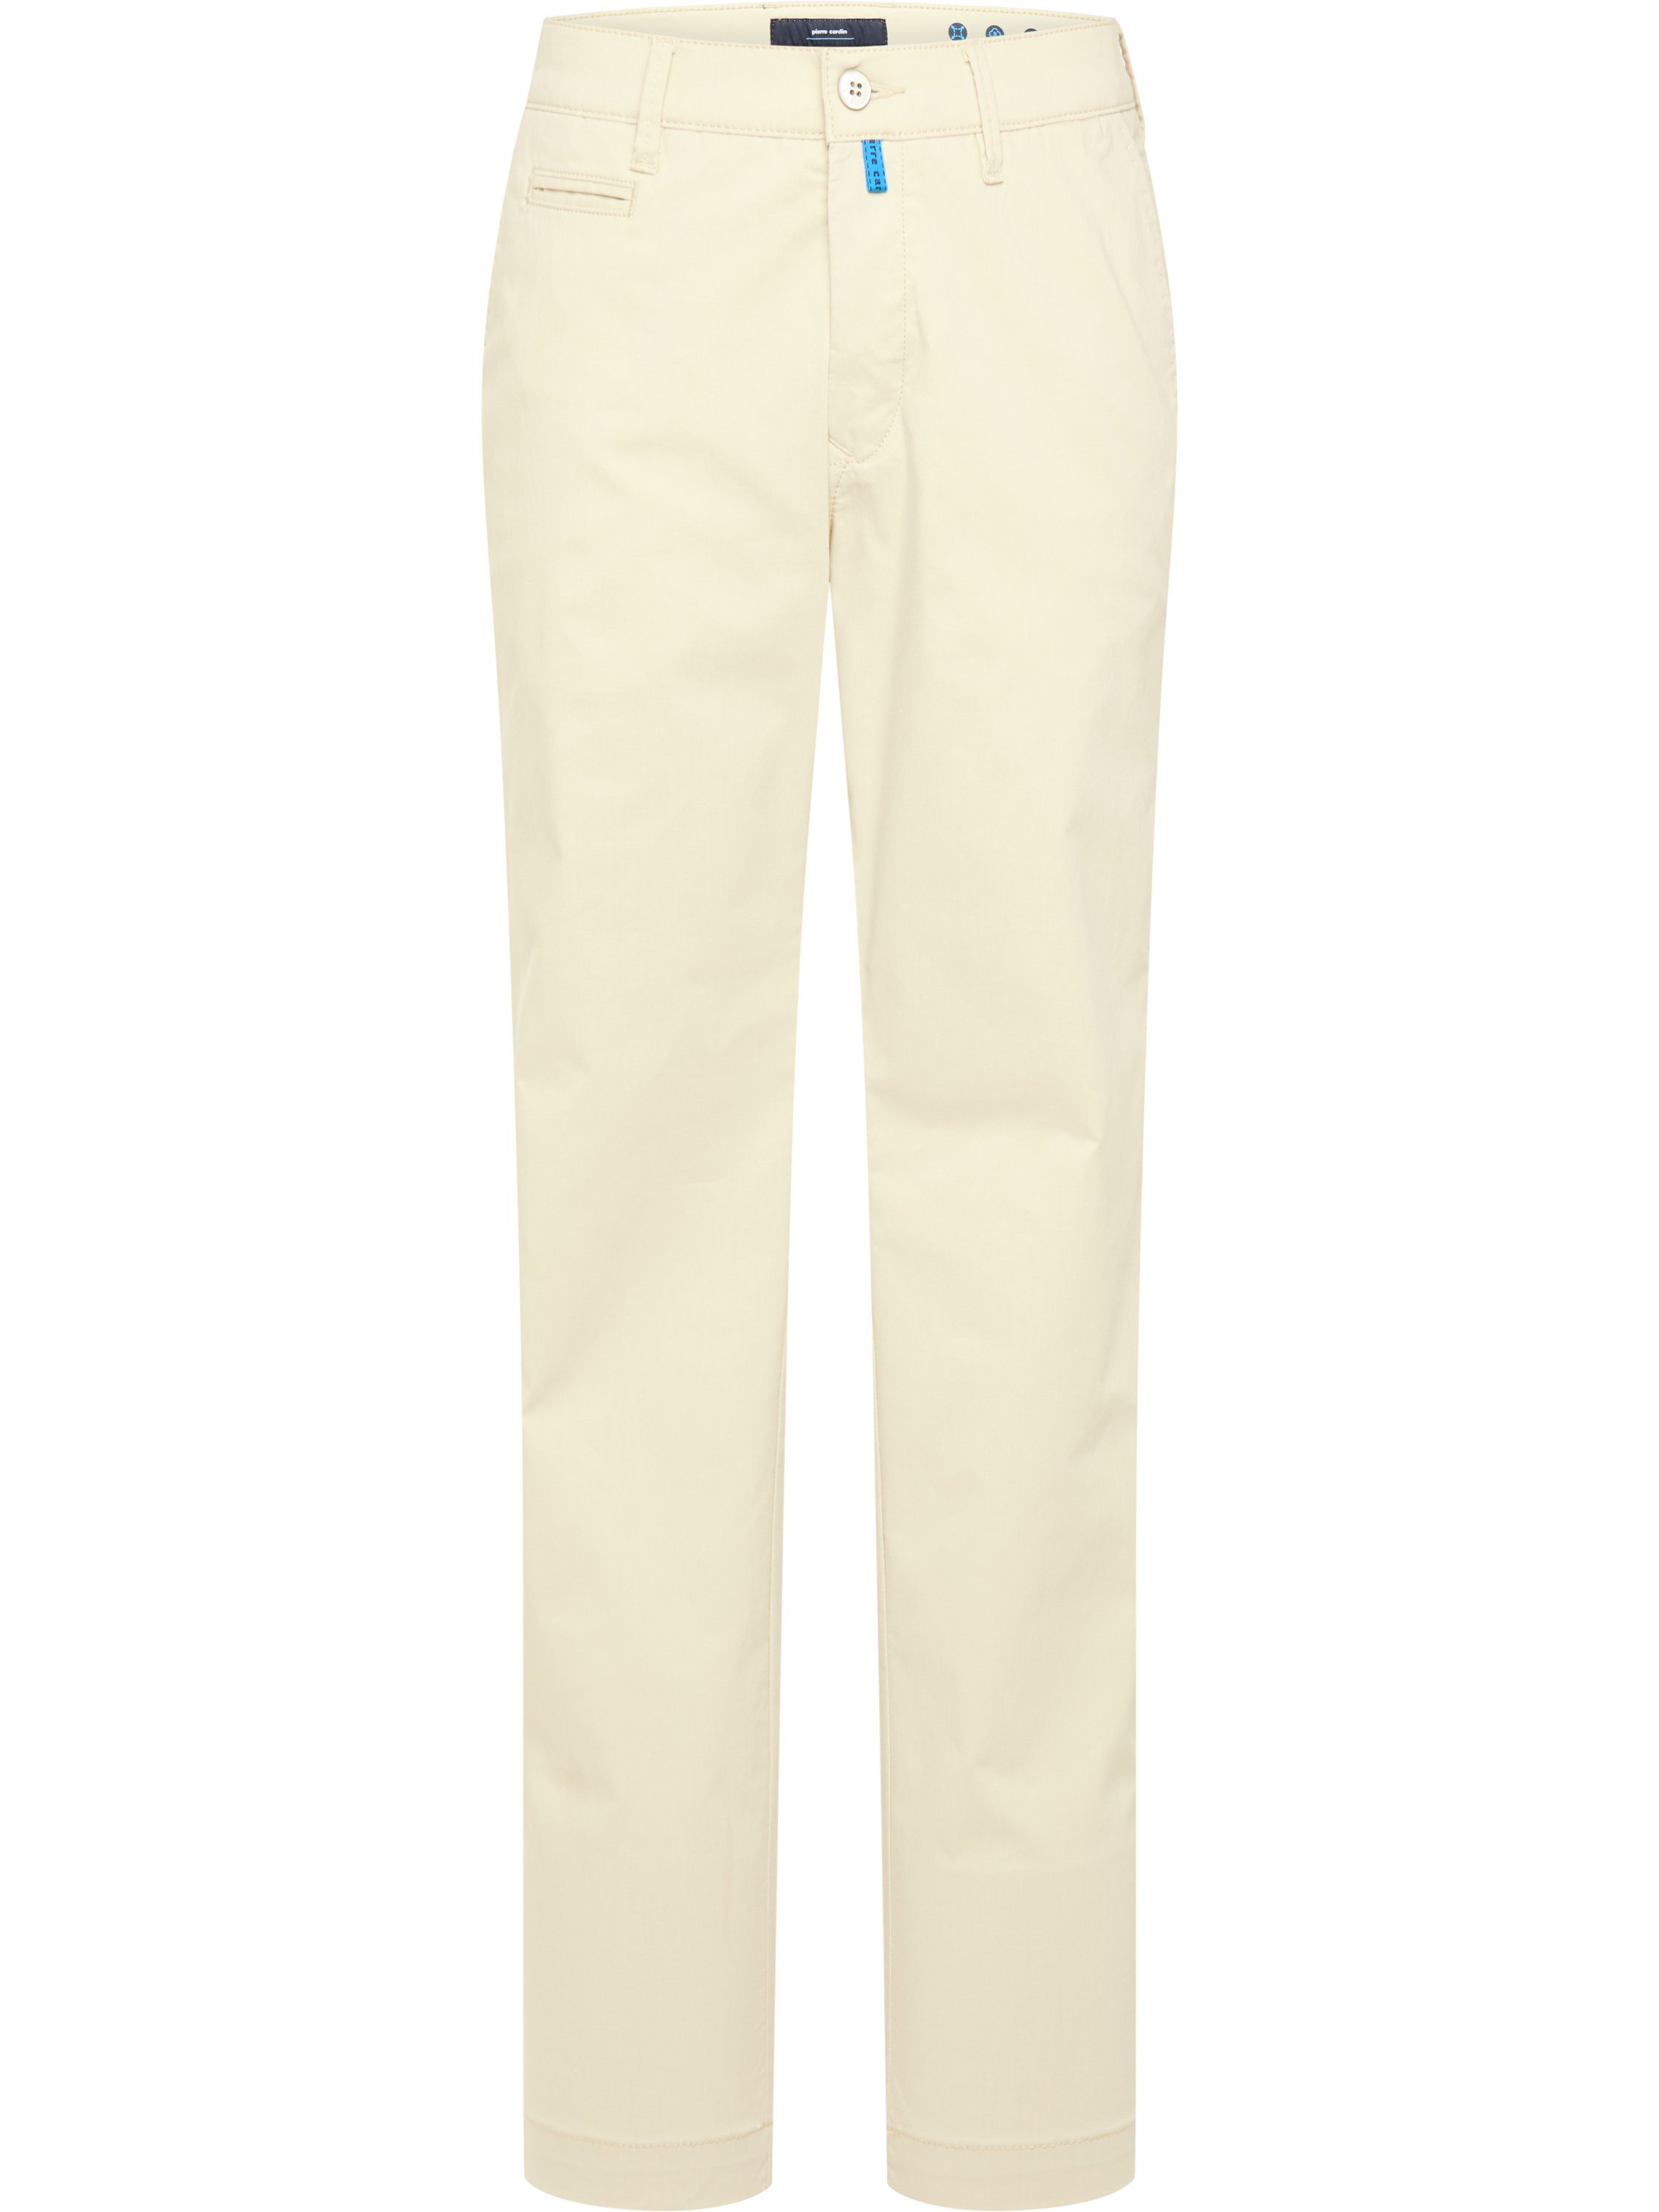 Pierre Cardin 5-Pocket-Jeans PIERRE CARDIN LYON AIRTOUCH light beige 33757 4990.26 - Coolmax Future